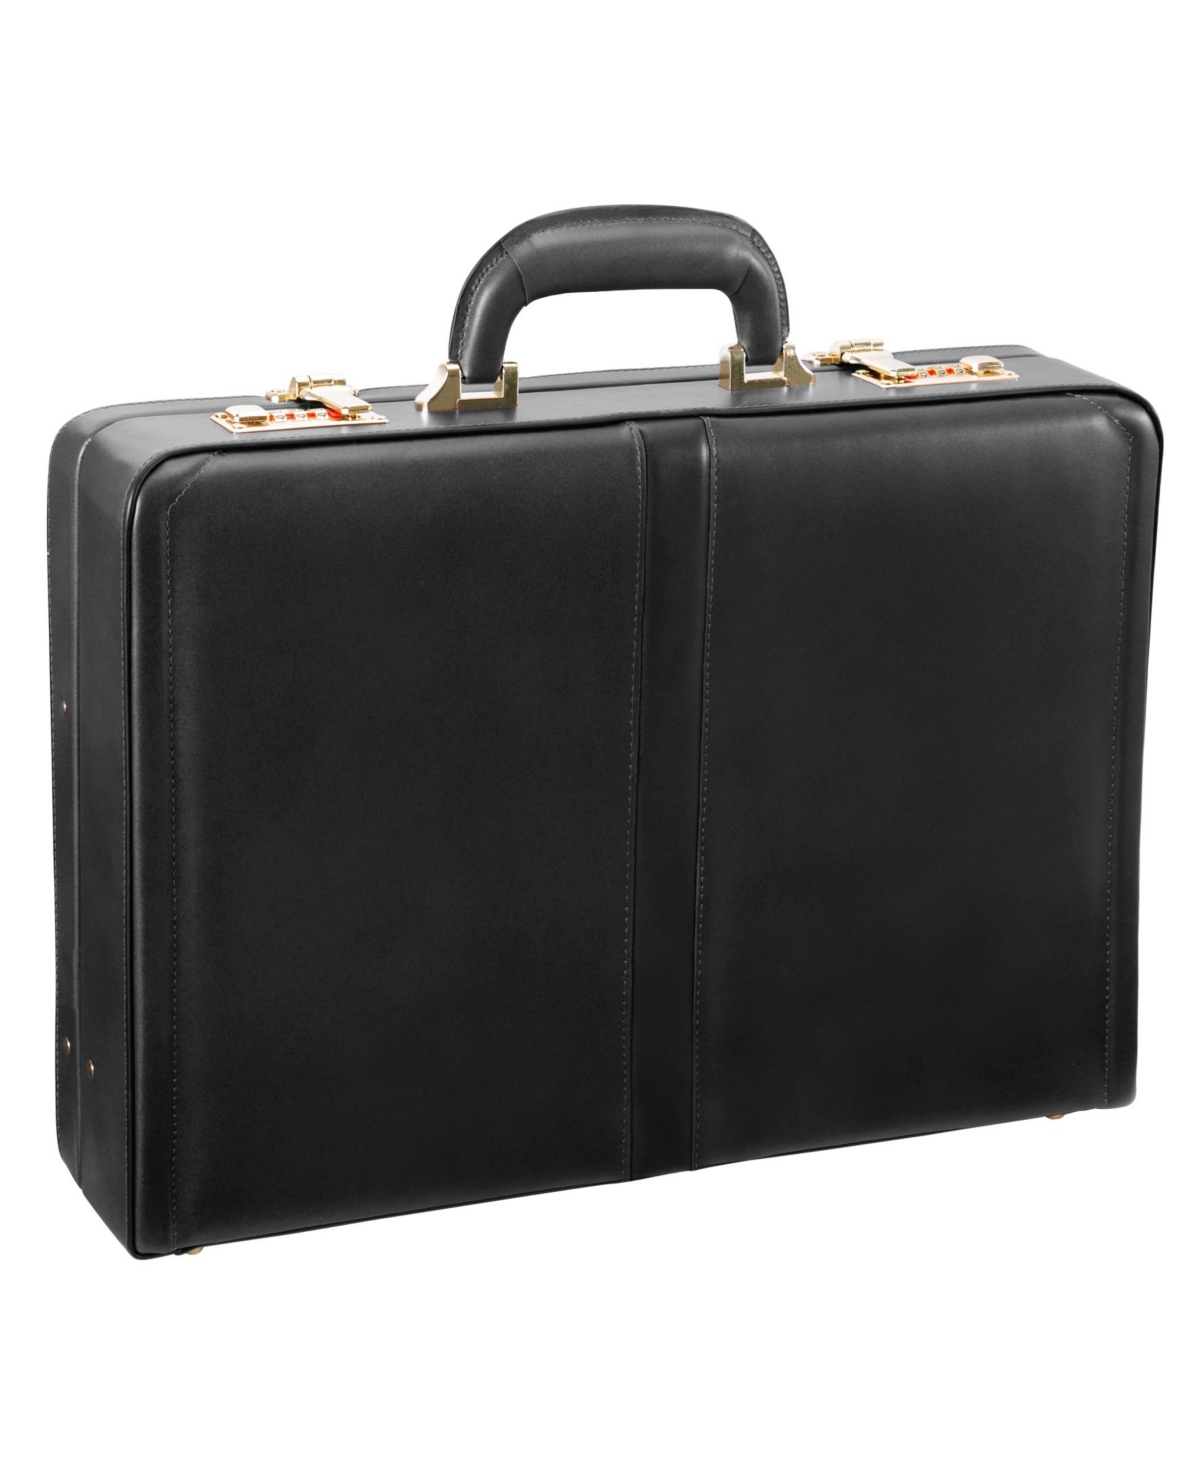 Daley, 3.5" Attache Briefcase - Black